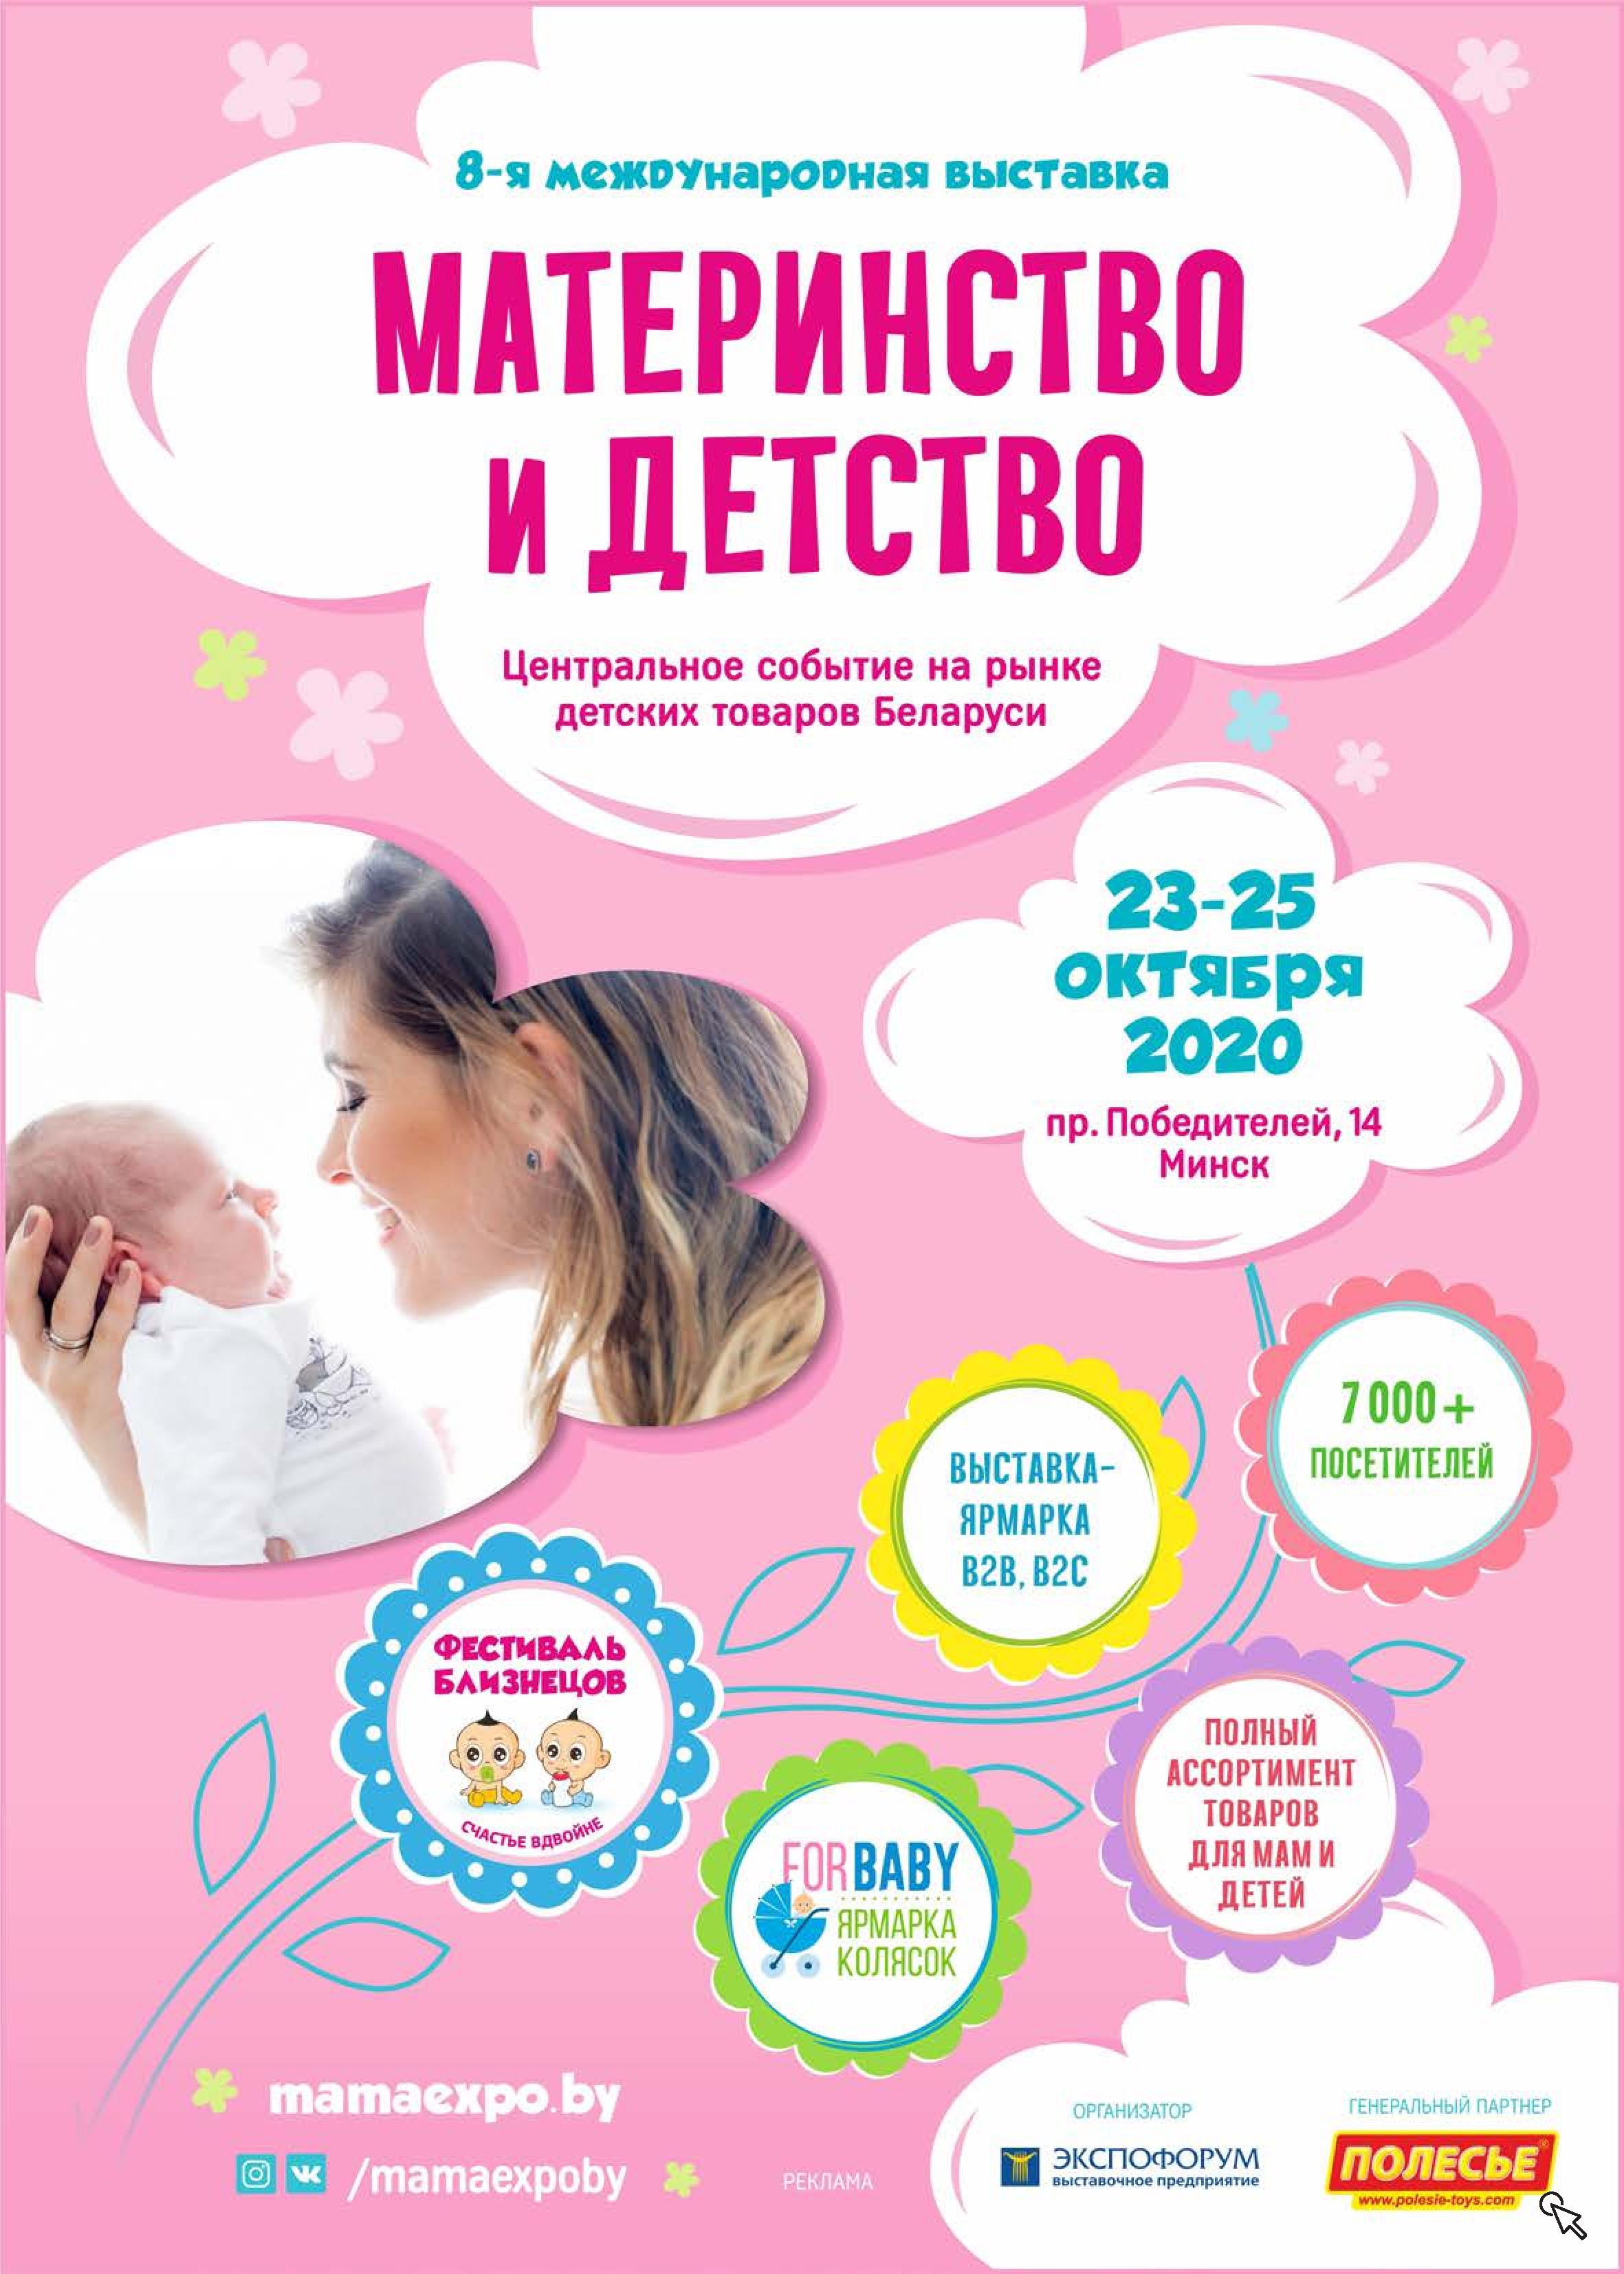 Центральное событие на рынке детских товаров Беларуси